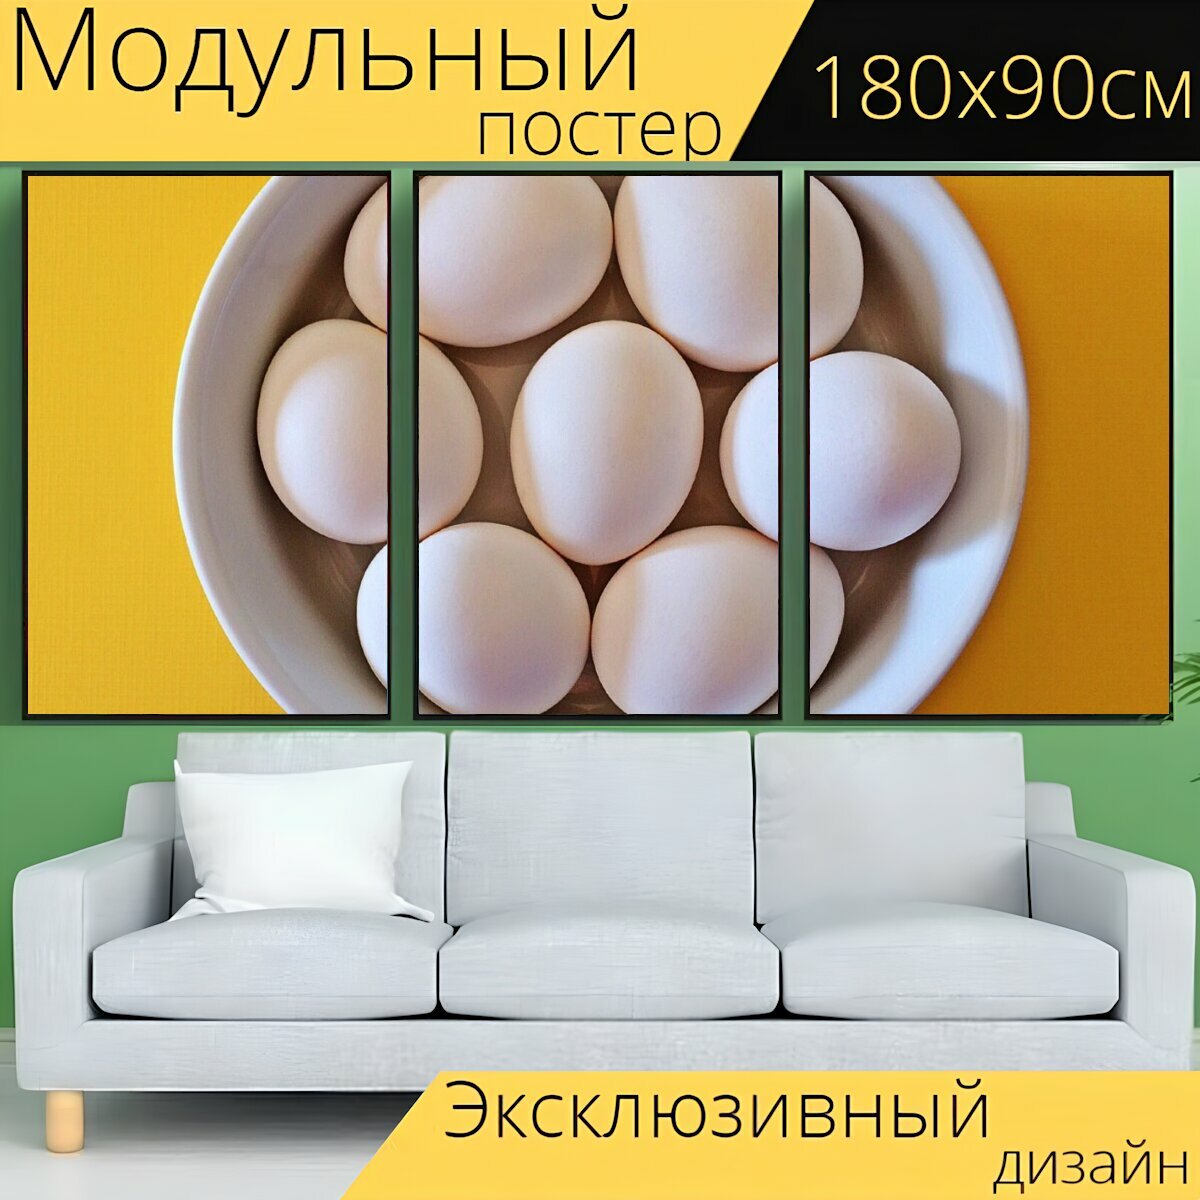 Модульный постер "Яйца, чаша, пасхальный" 180 x 90 см. для интерьера